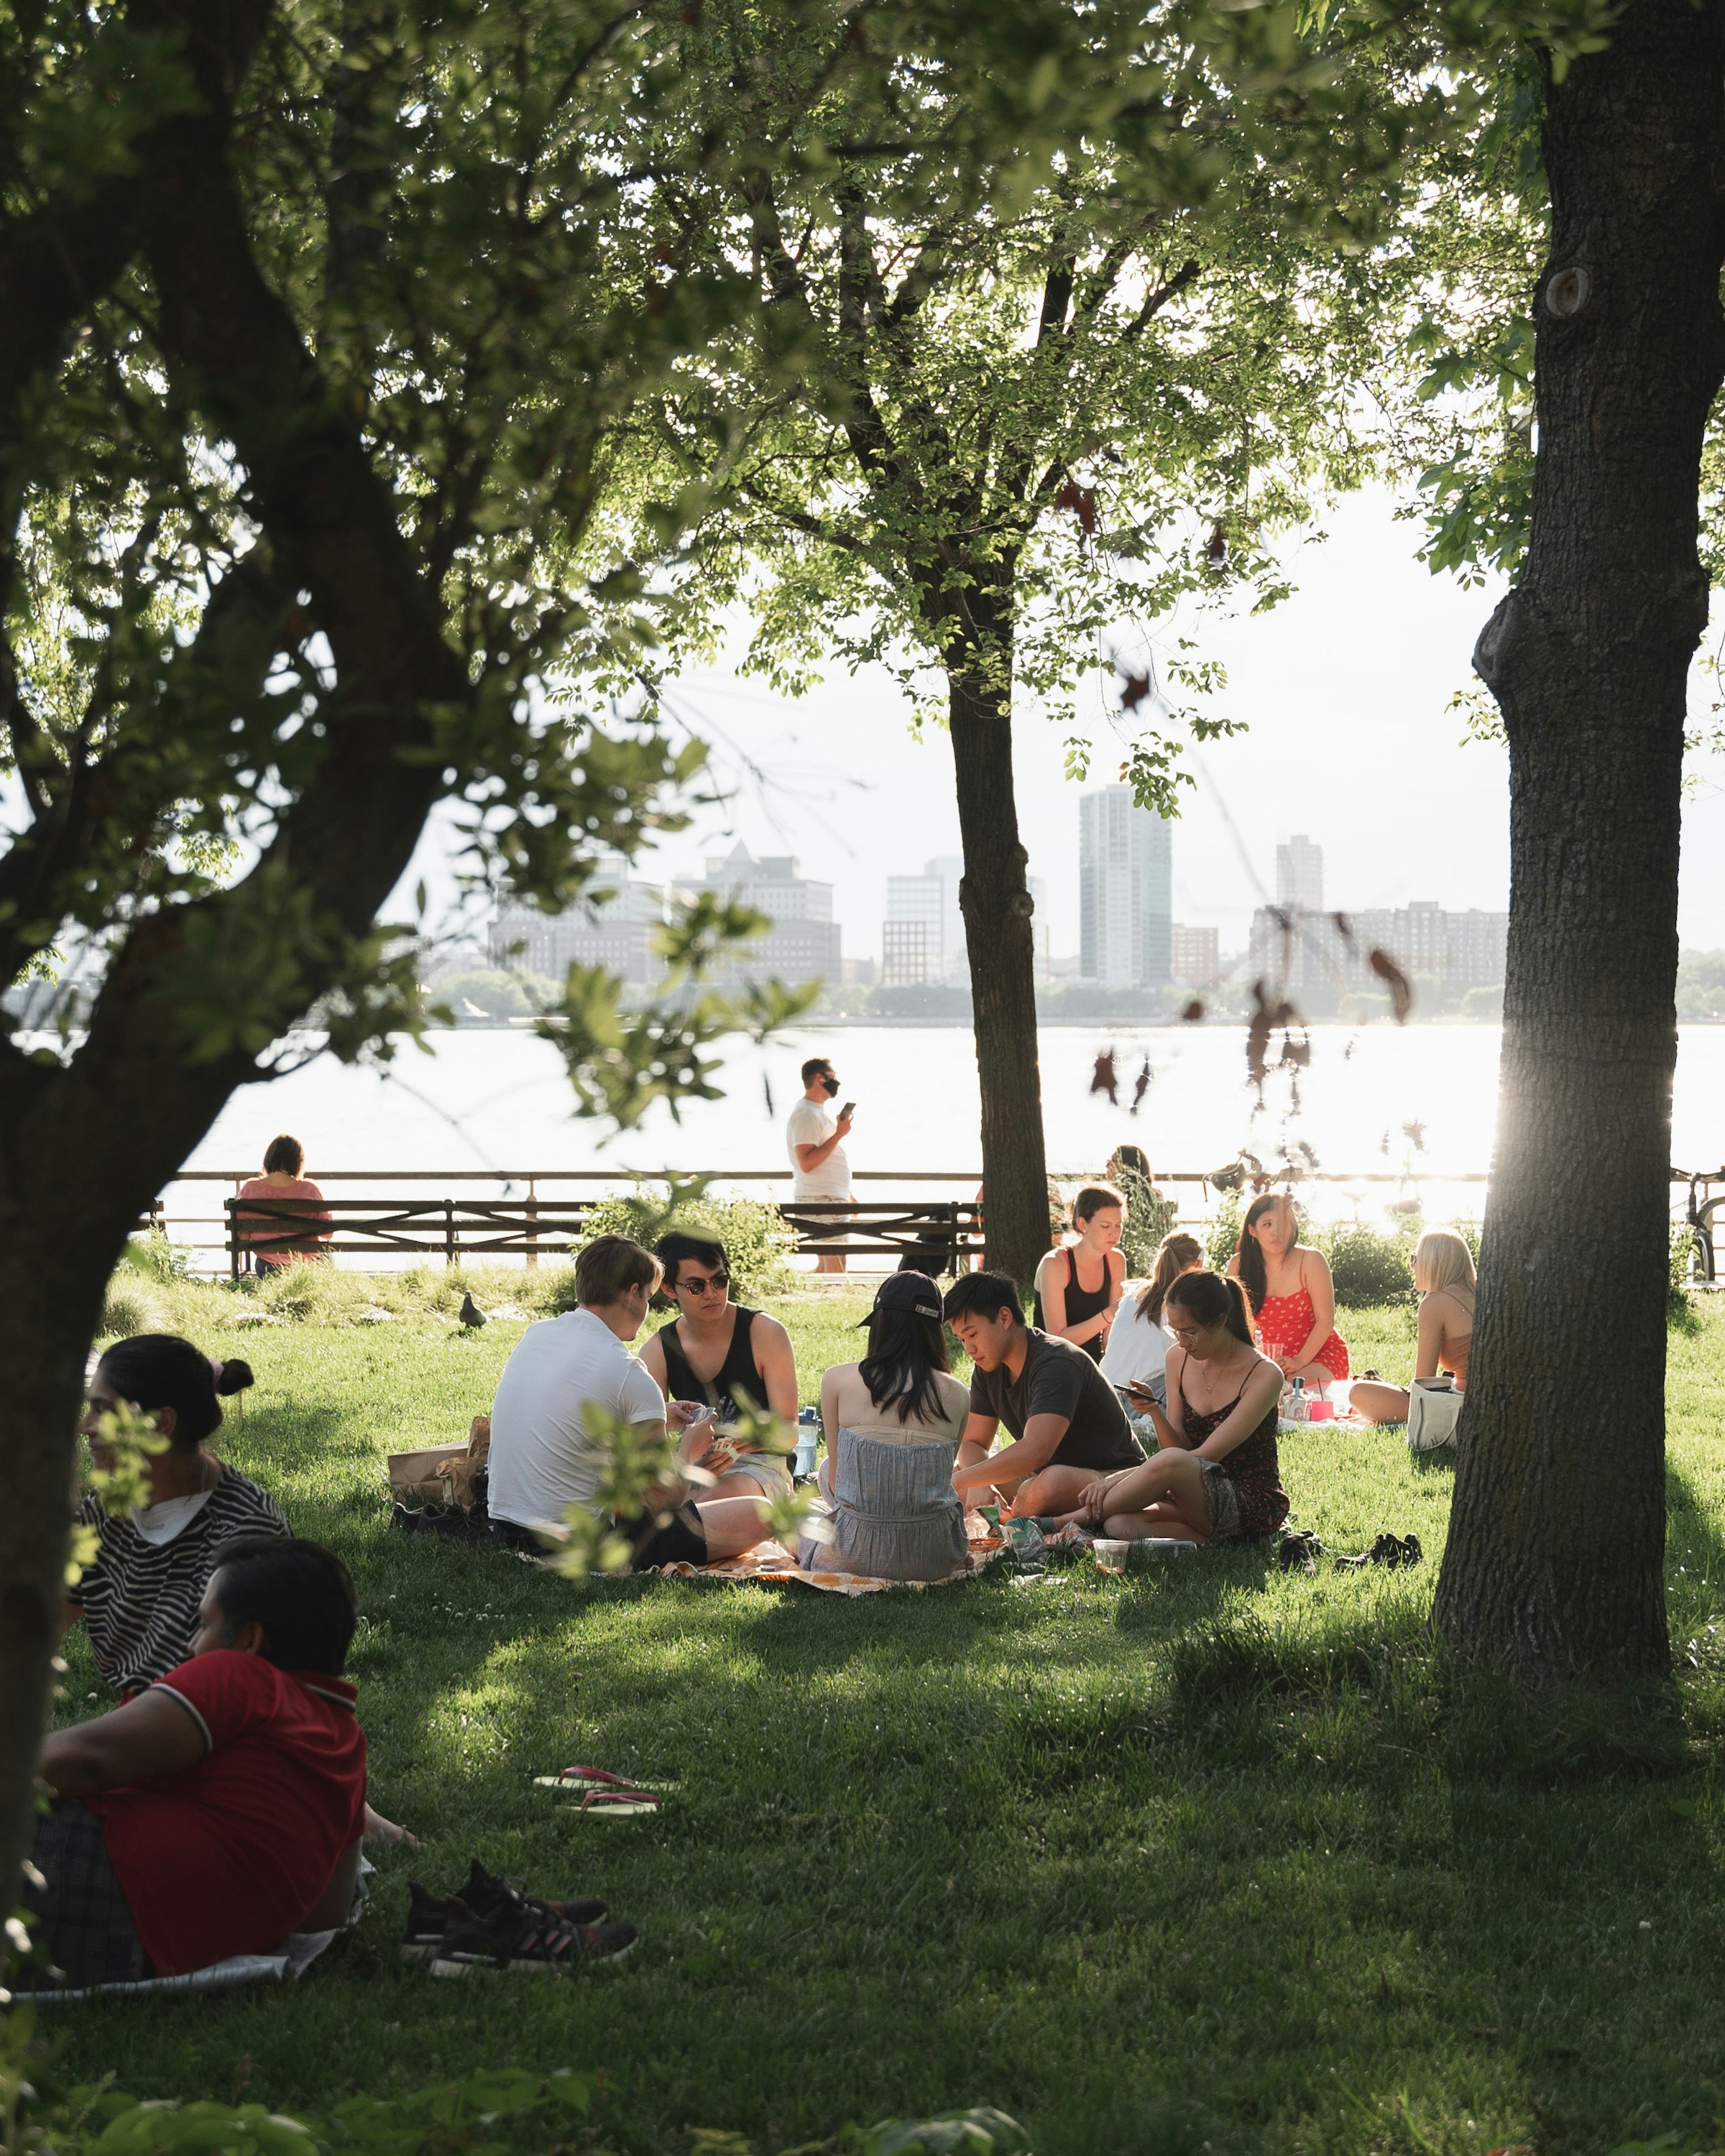 Menschen beim Picknick | Quelle: Unsplash